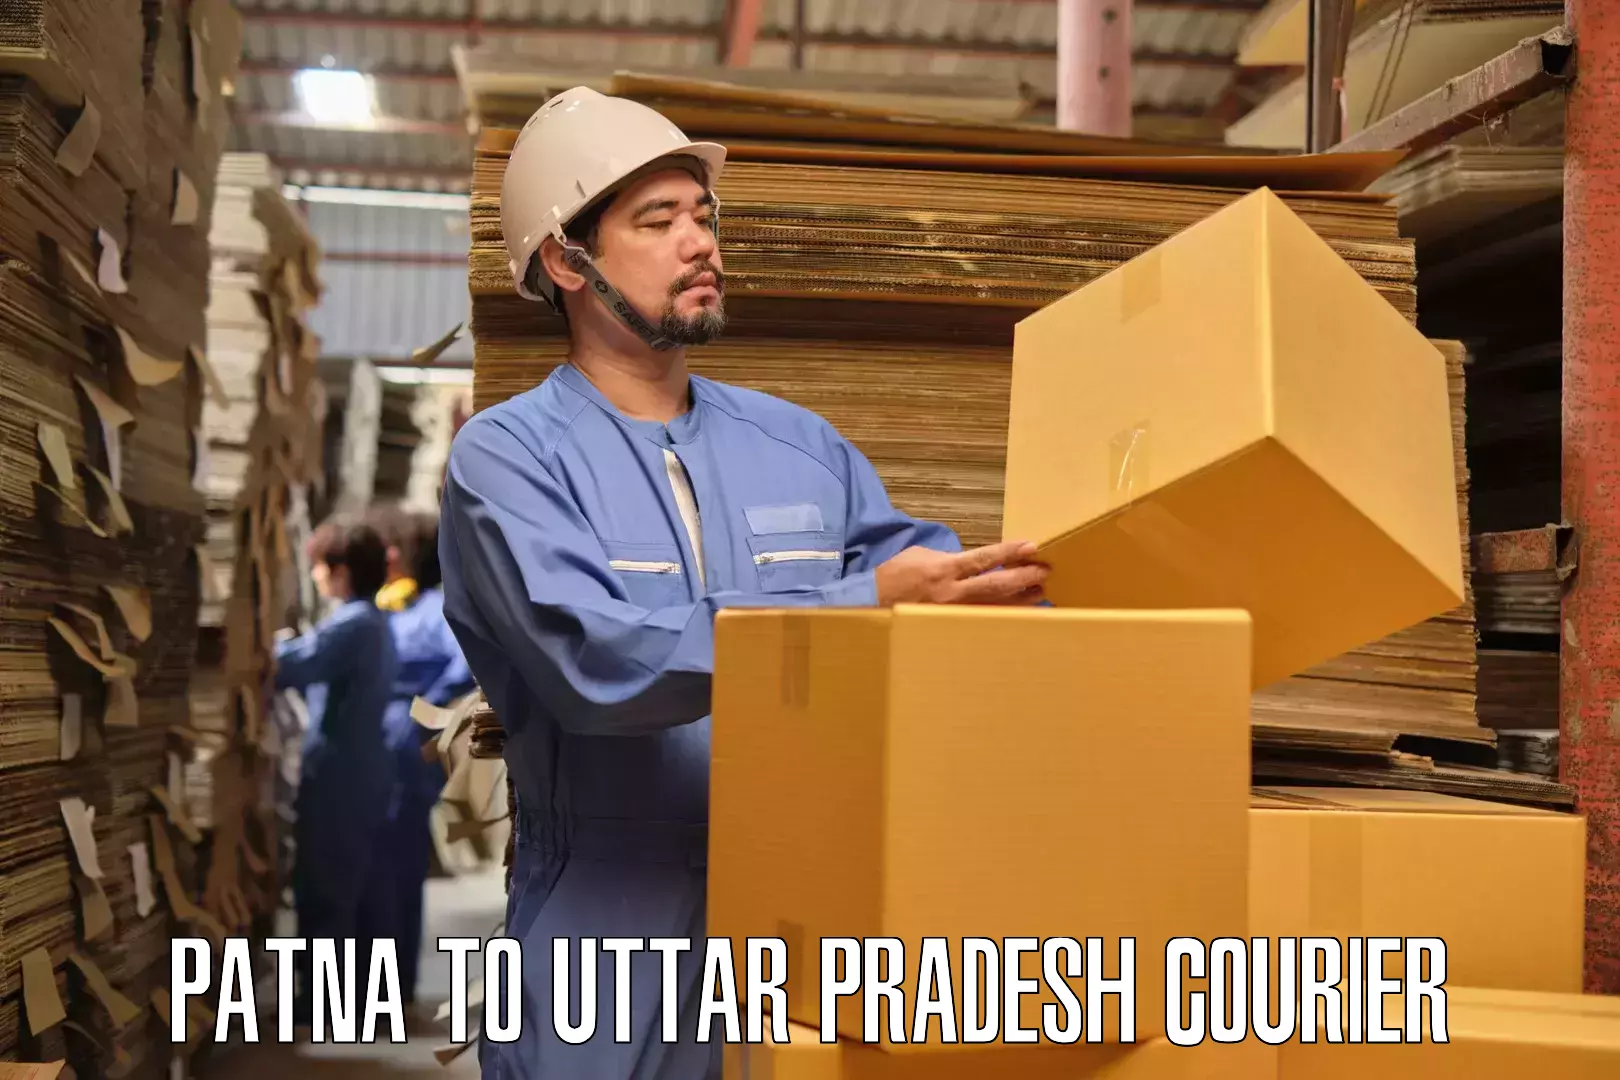 Professional furniture movers Patna to Marihan